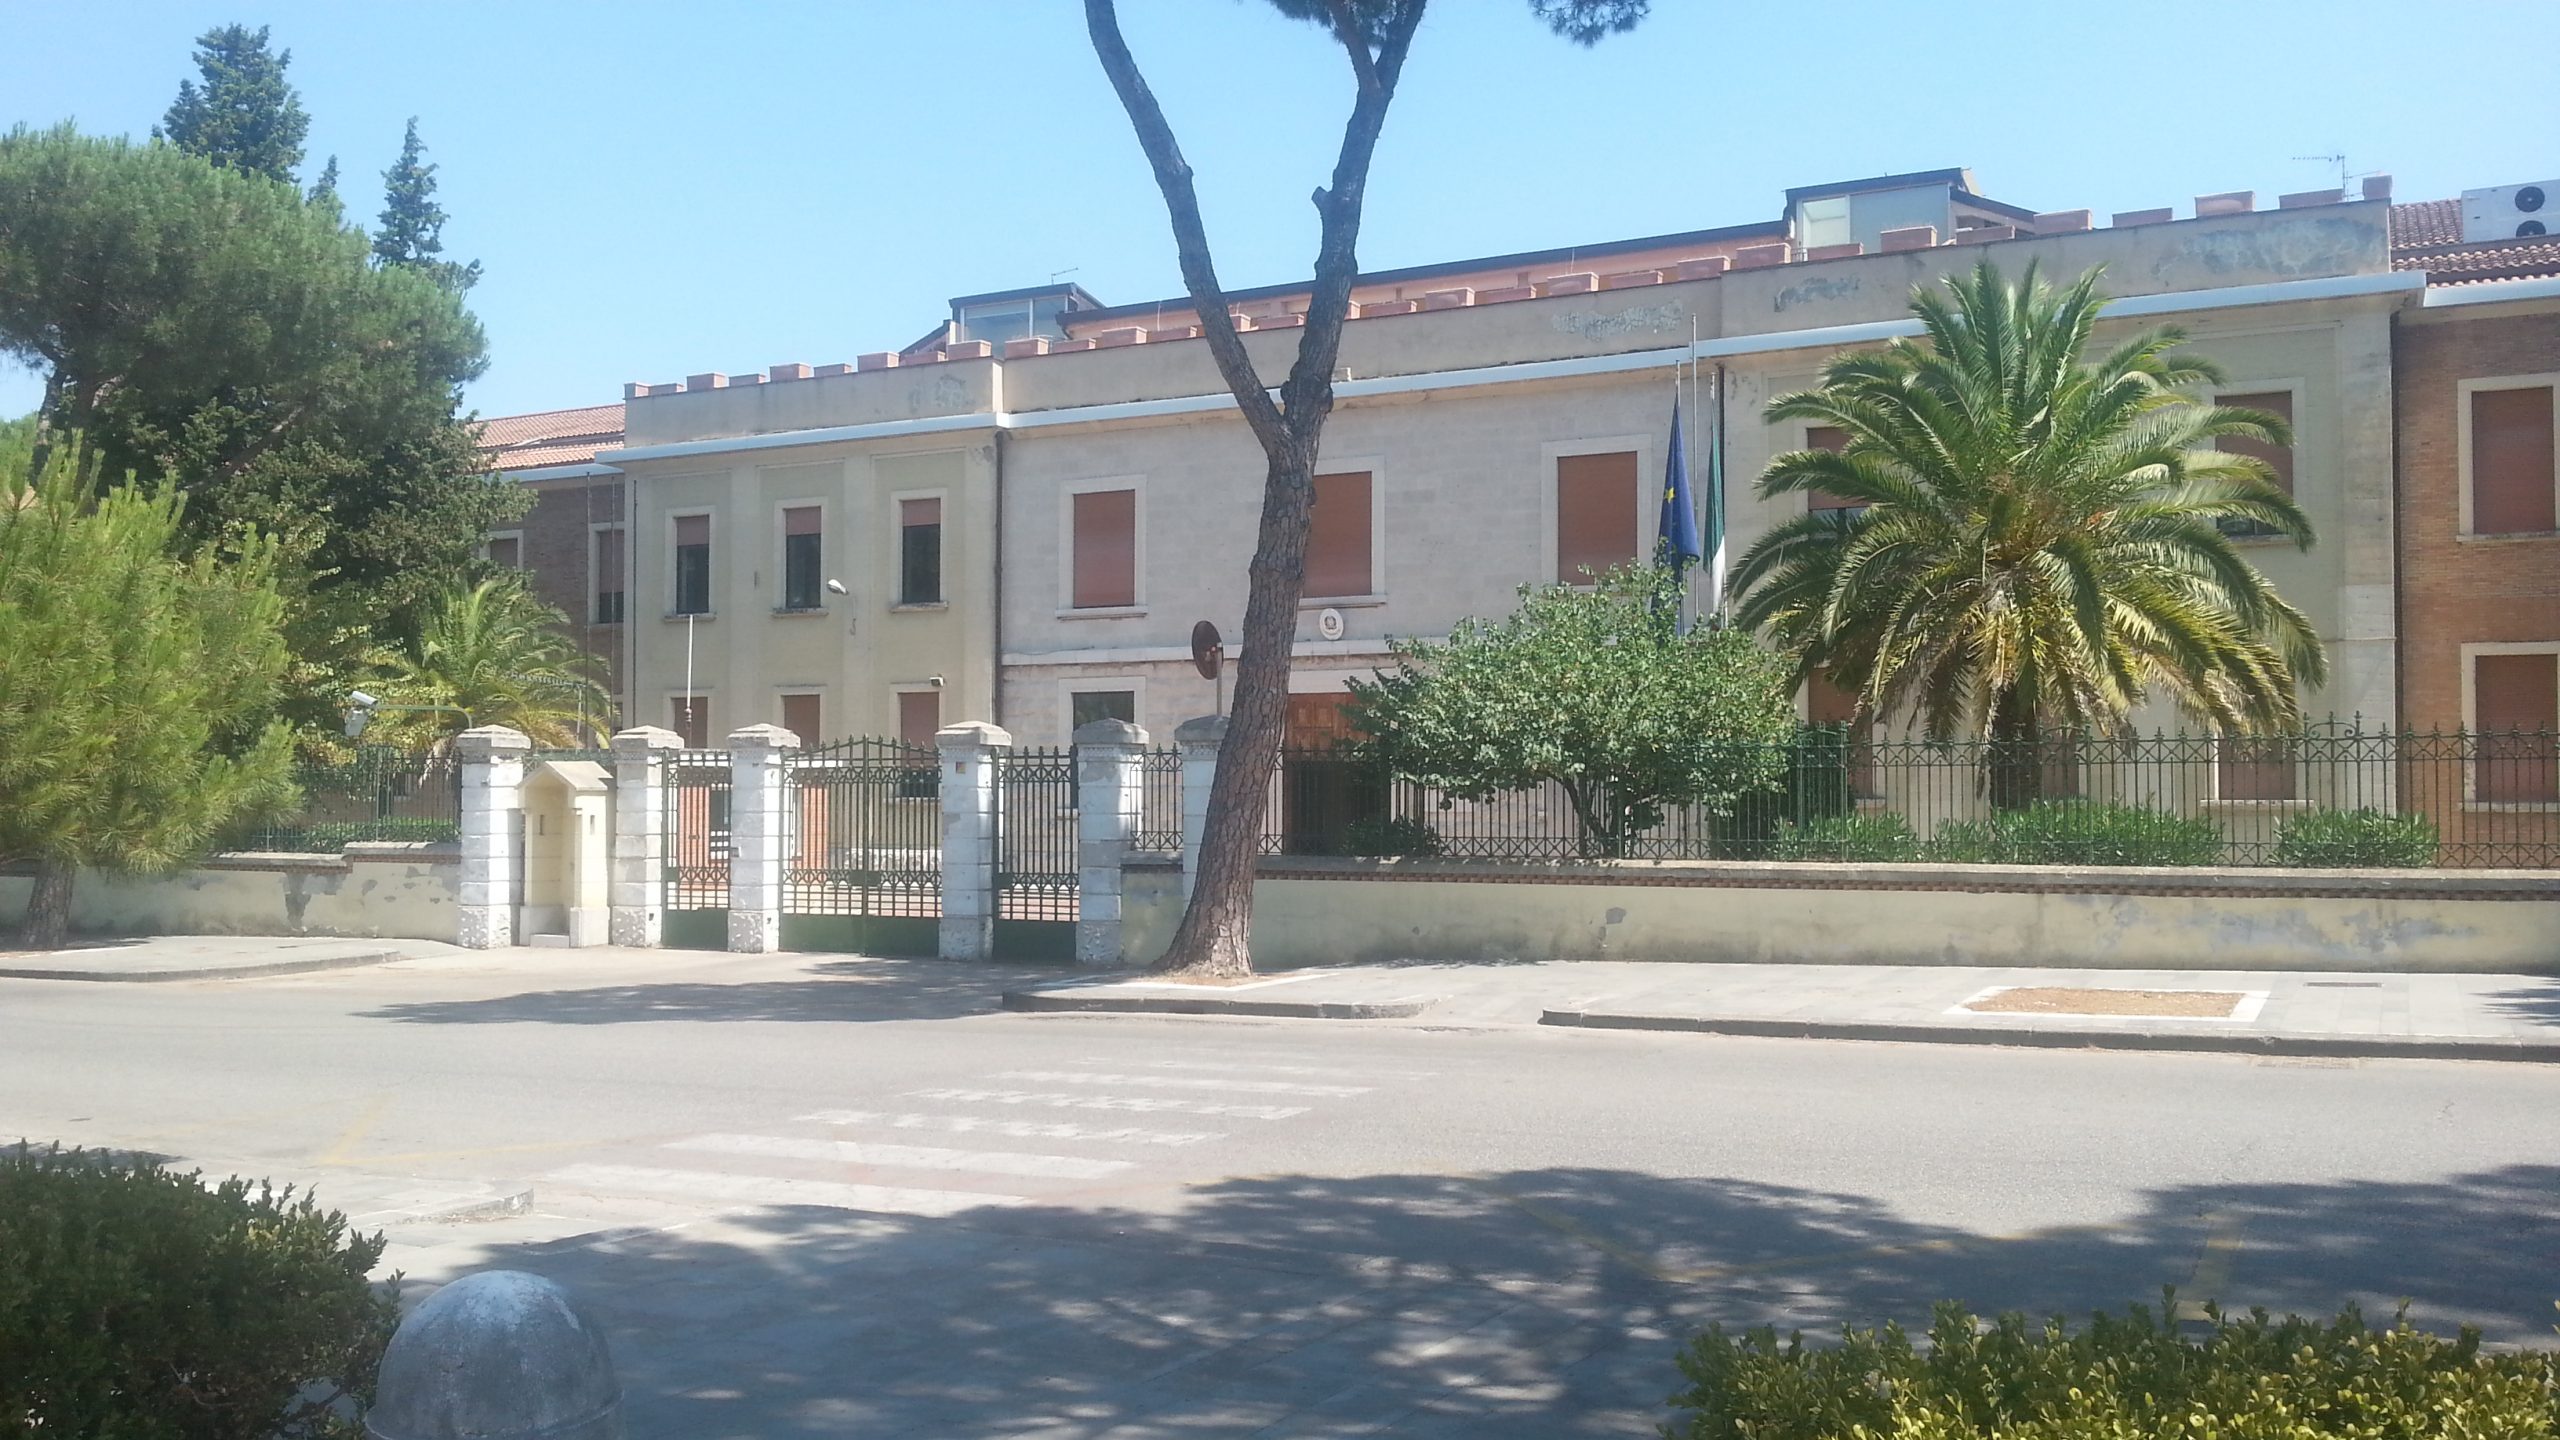 Benevento|Ex Caserma Guidoni, il Tribunale condanna il Ministero di Giustizia